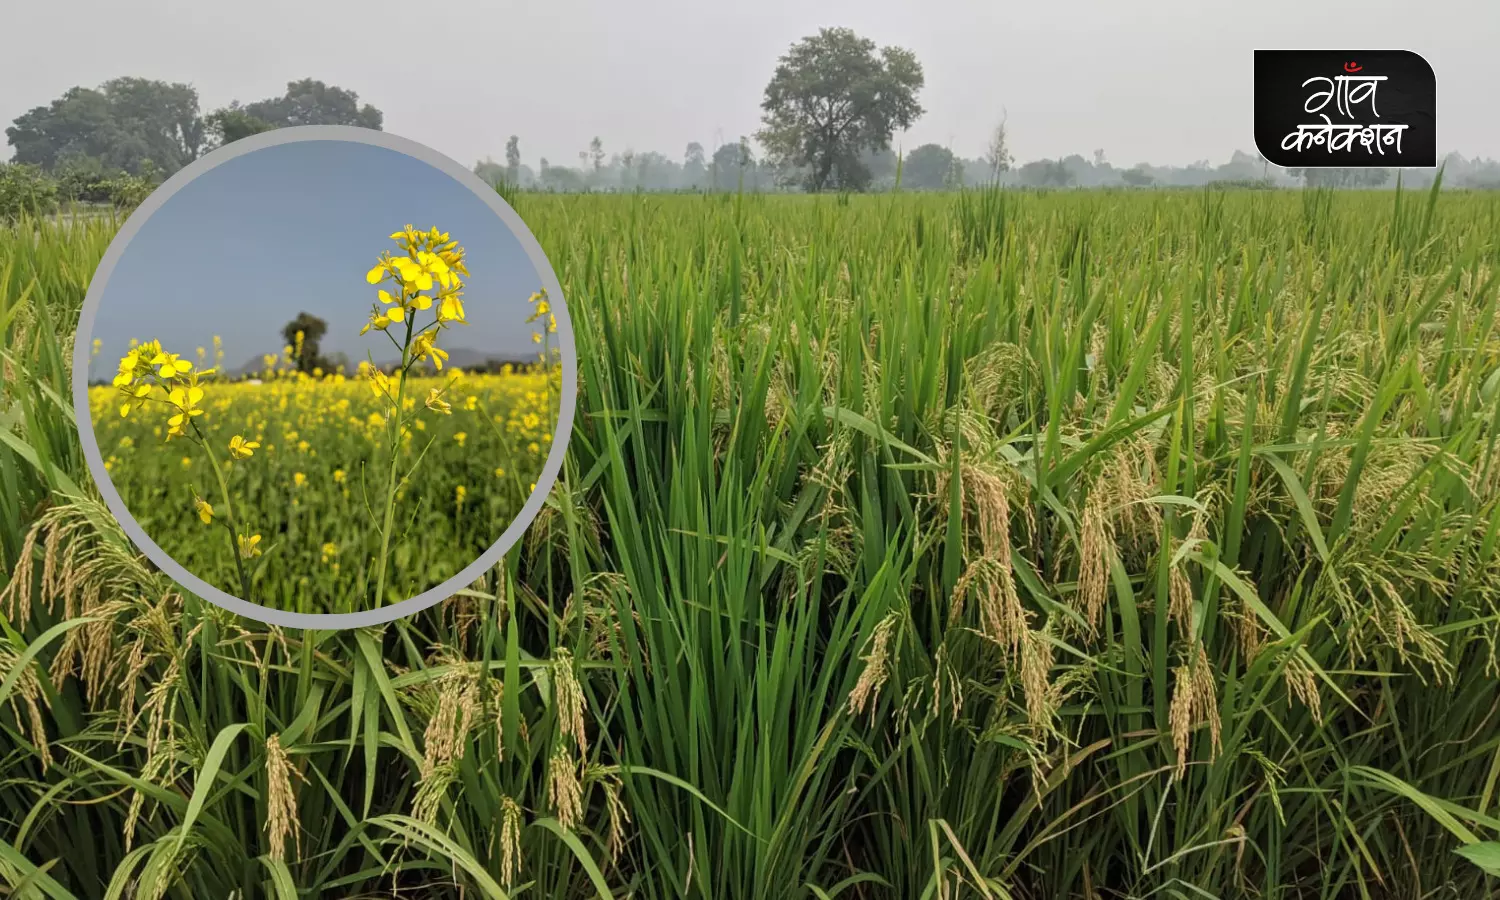 कृषि विशेषज्ञों की सलाह: खरीफ फसलों में रोग-कीट प्रबंधन के साथ ही करें सरसों की अगेती खेती की तैयारी